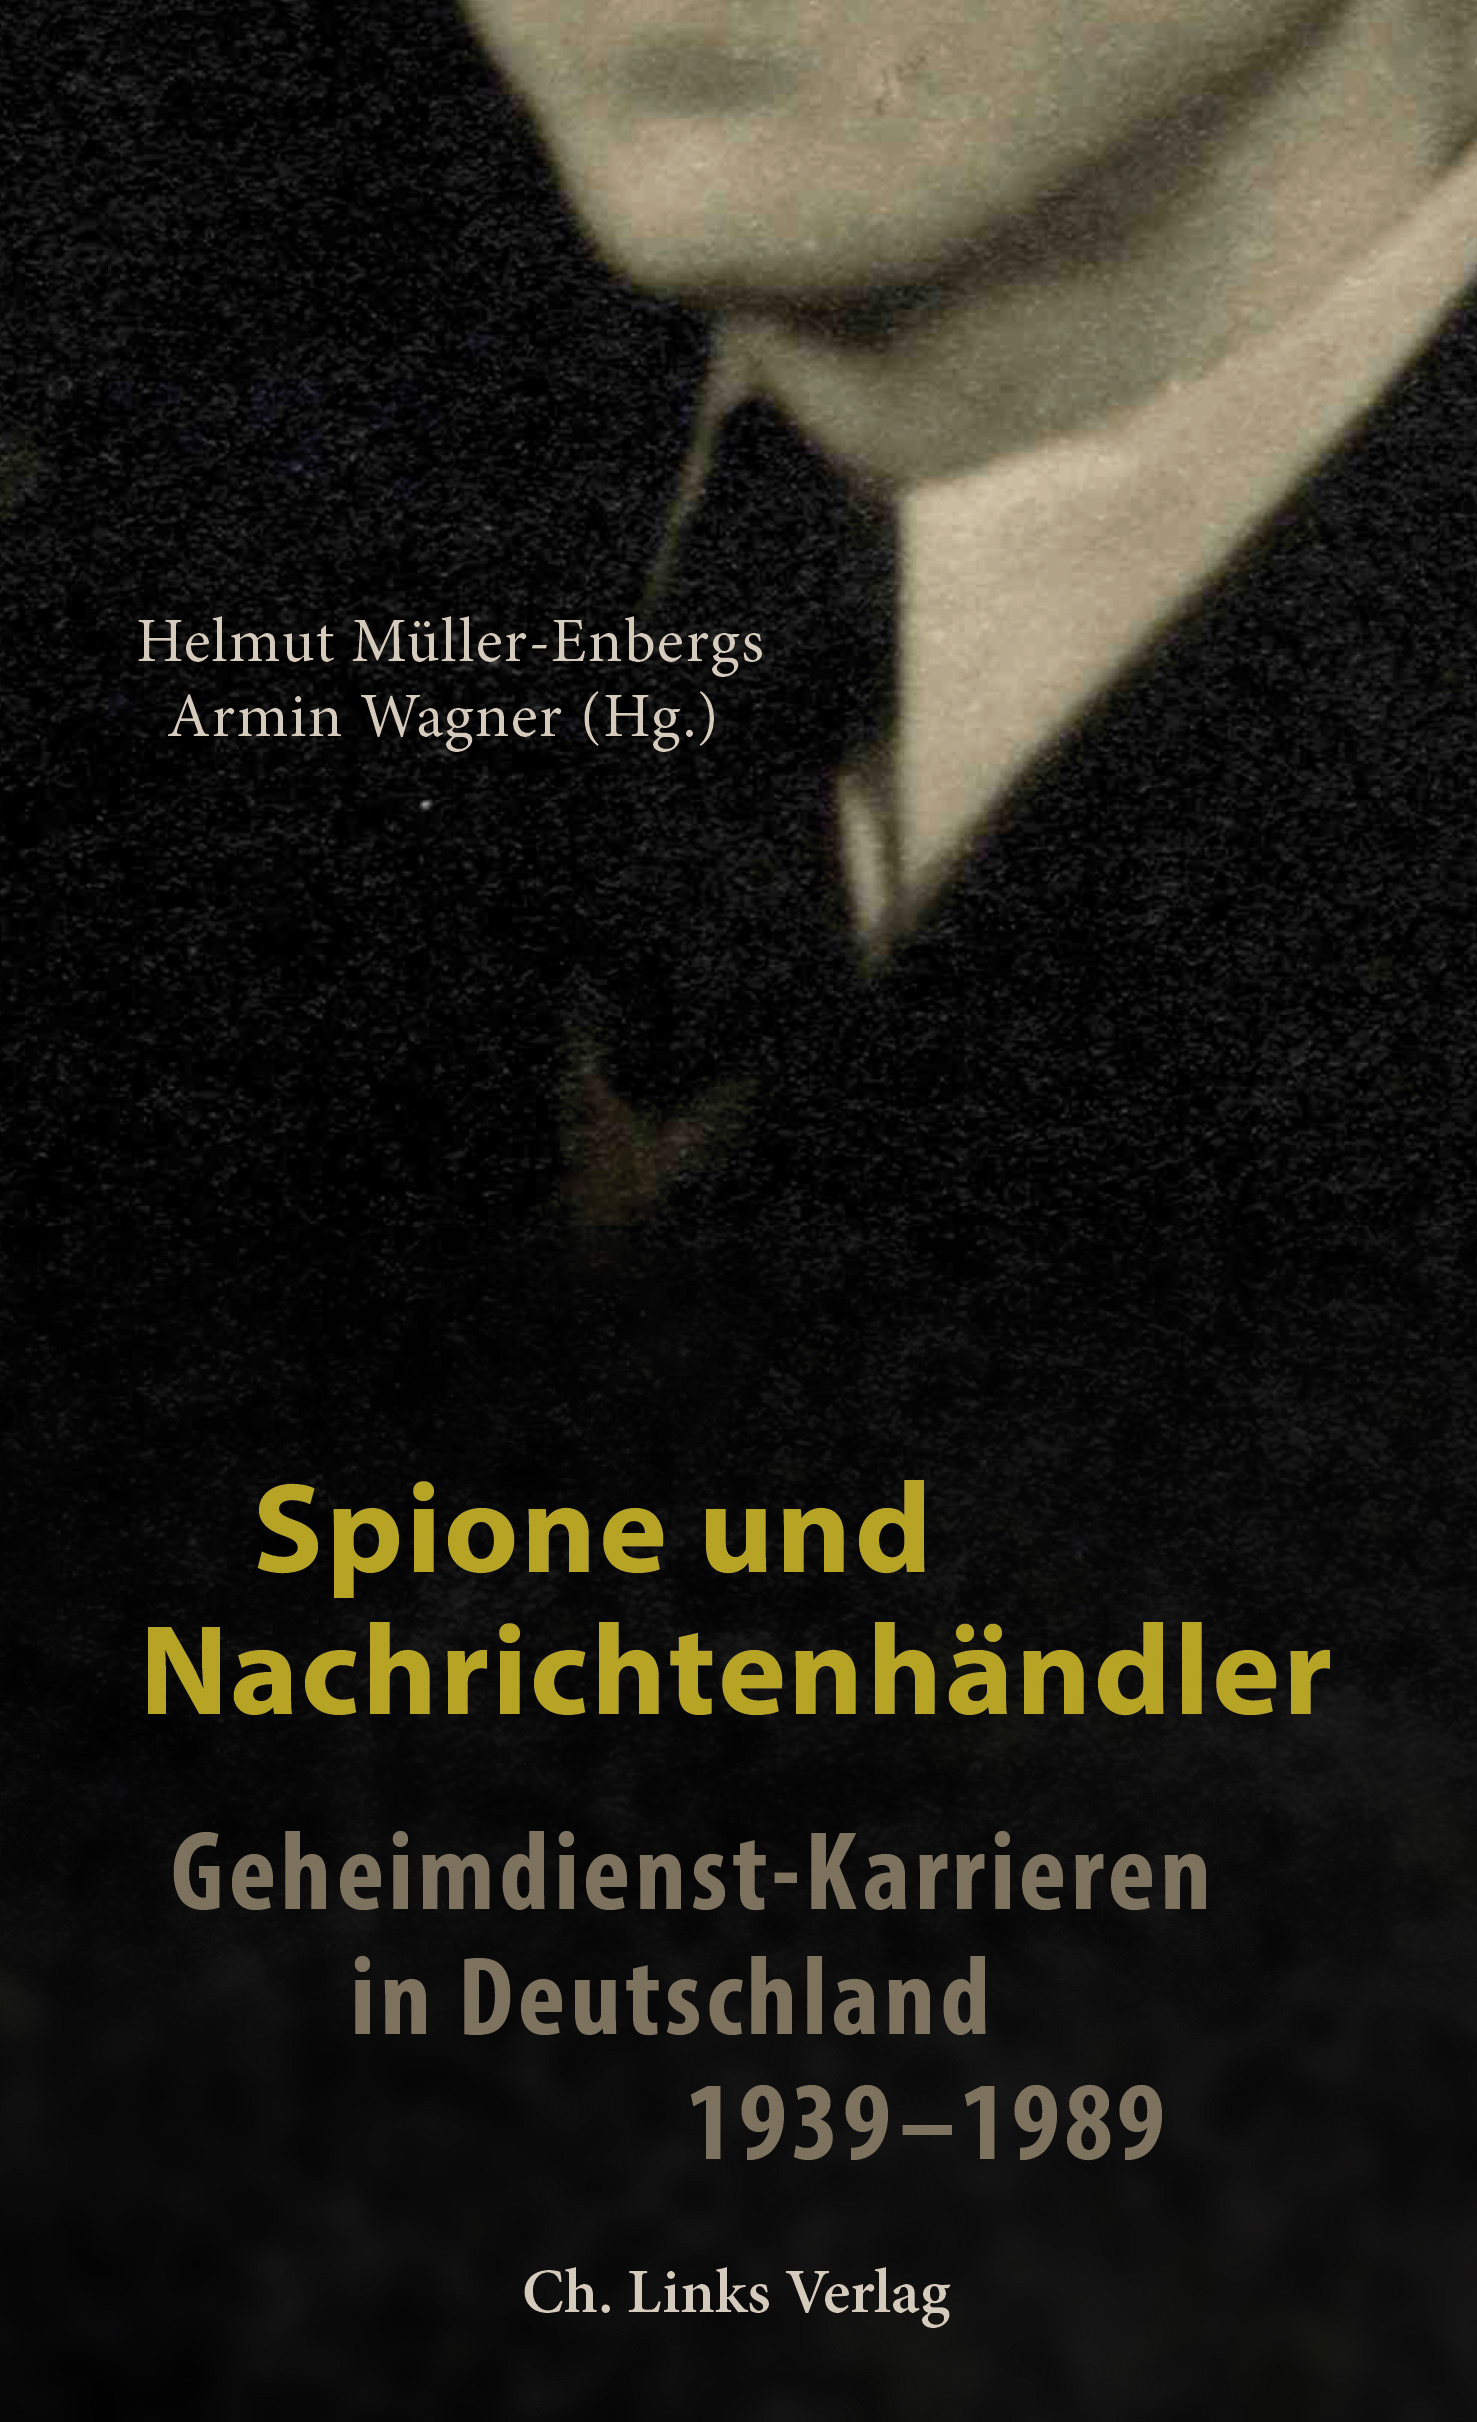 Helmut Müller-Enbergs, Armin Wagner: Spione und Nachrichtenhändler